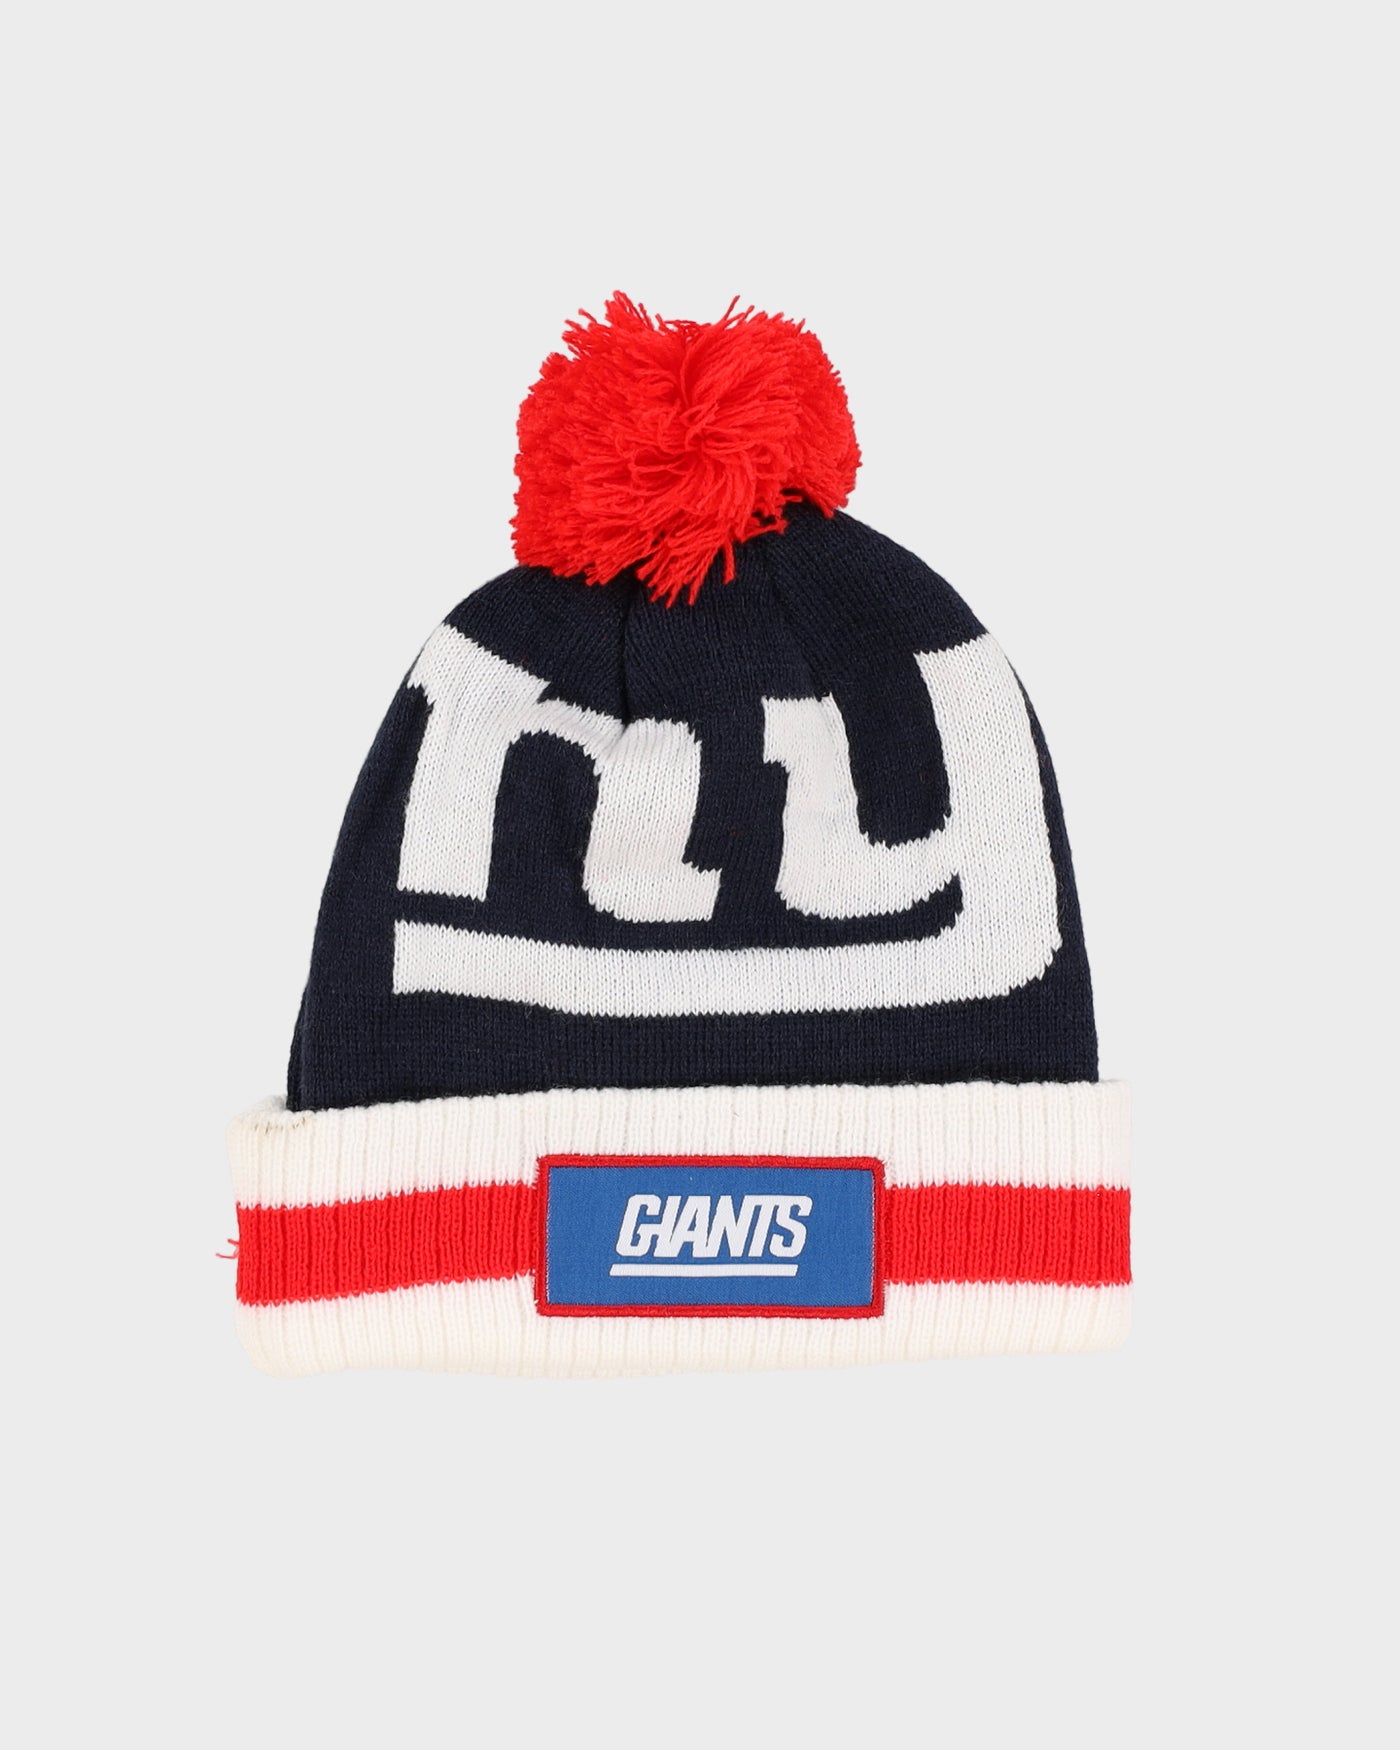 New York Giants NFL Bobble Hat Beanie